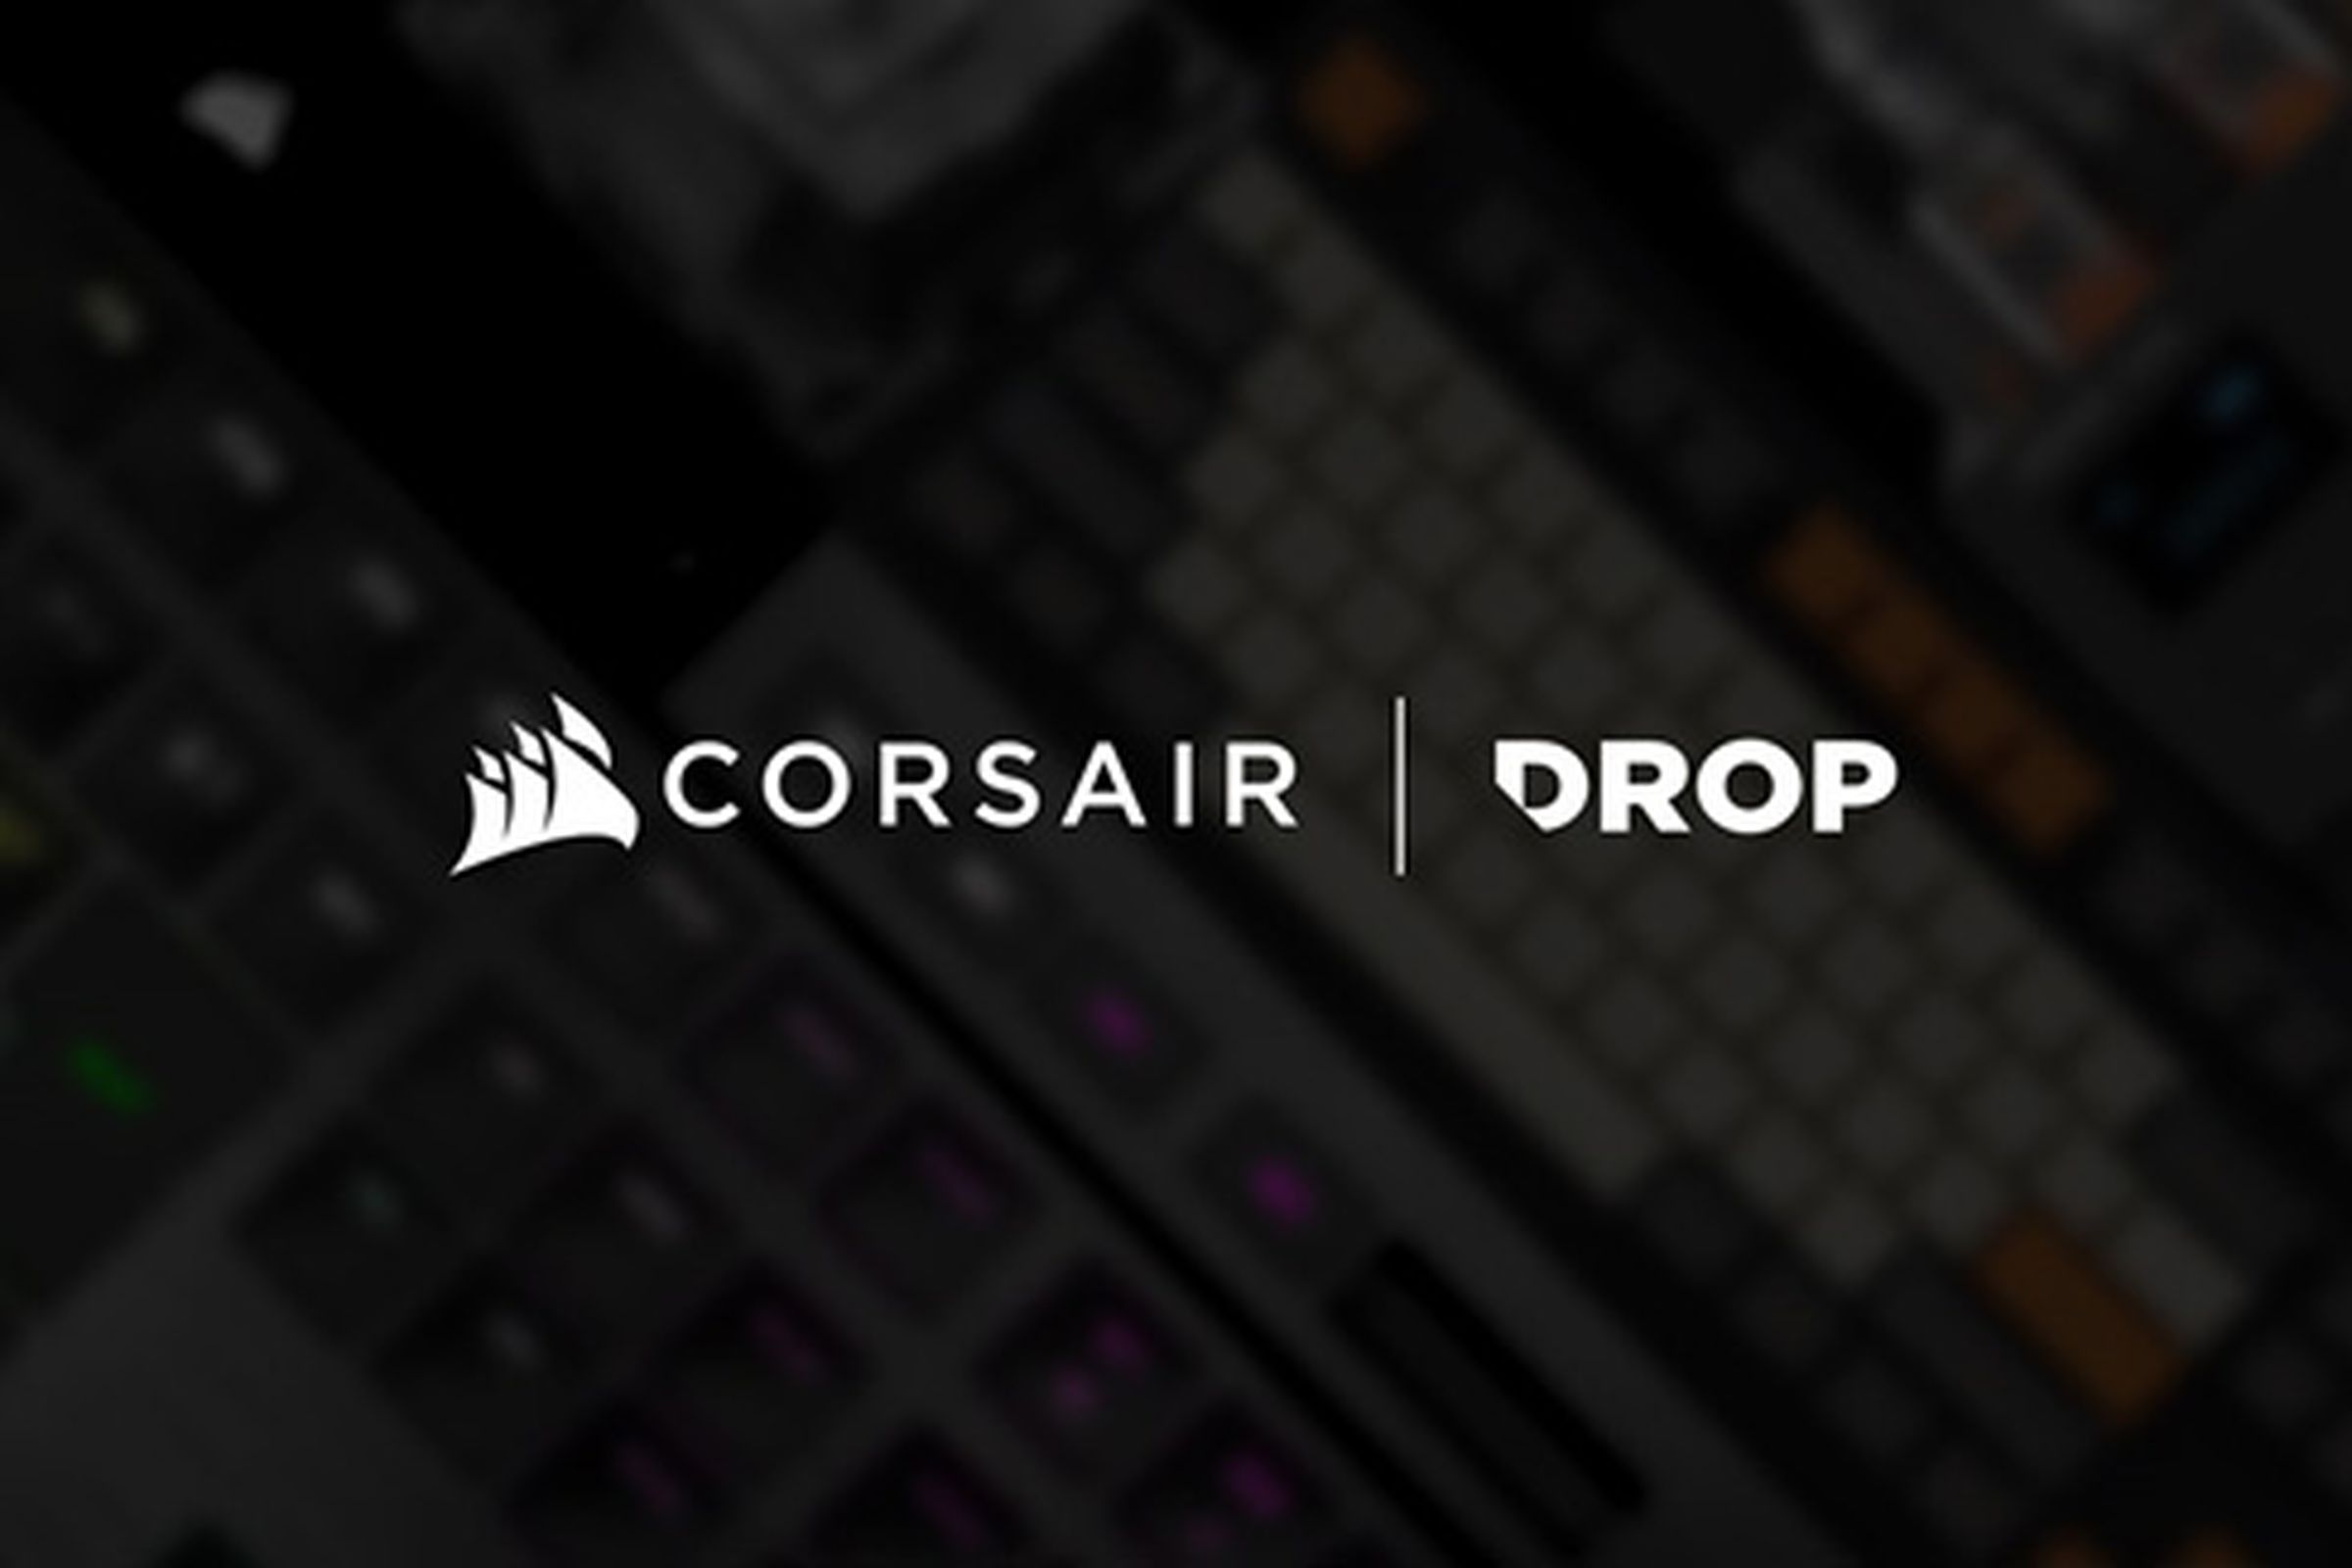 Drop and Corsair logos.